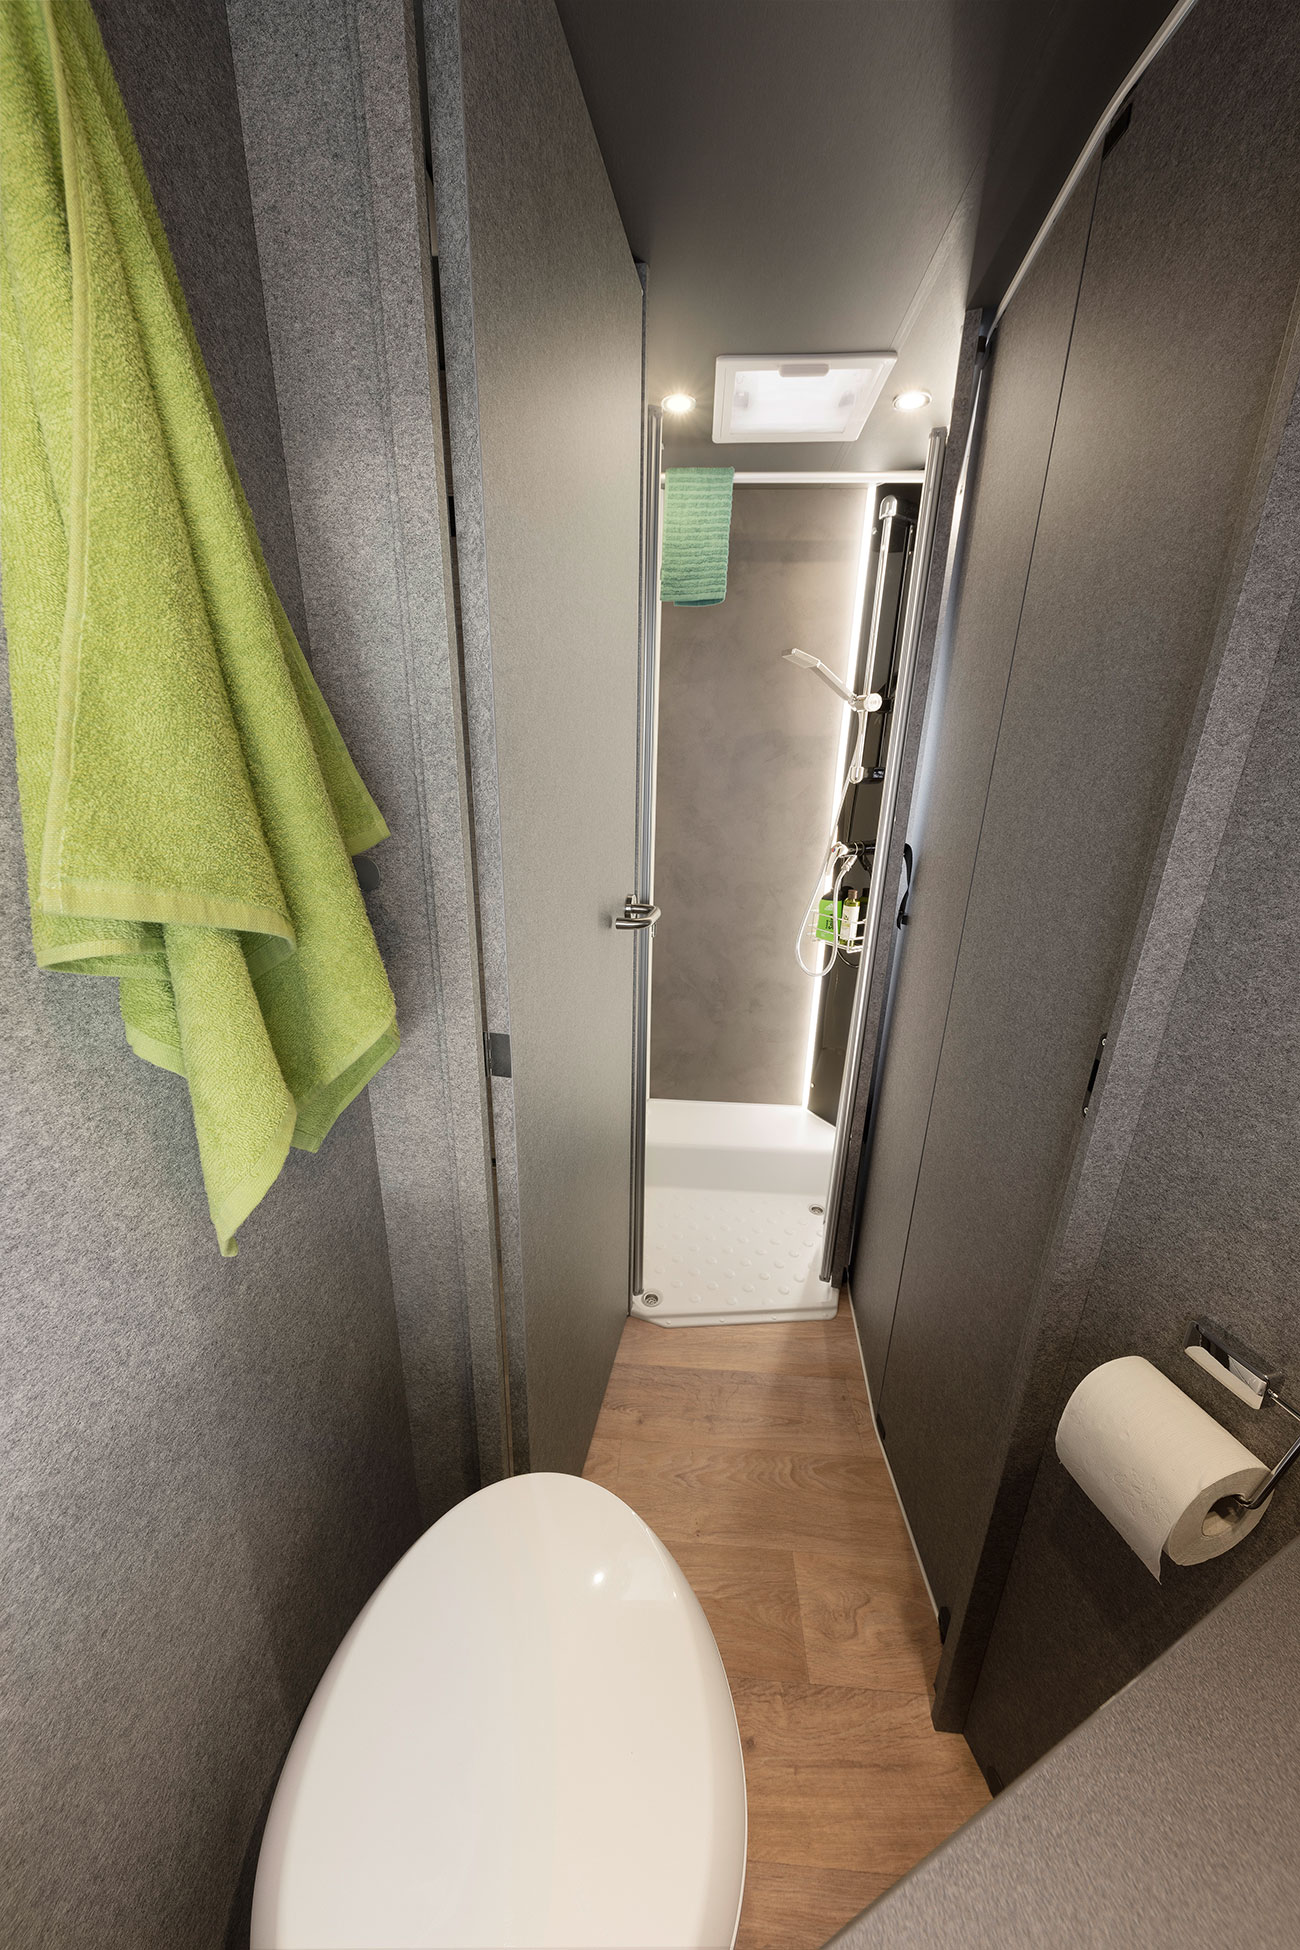 En smart løsning er baderummet (modelafhængigt). Gennemgangen til bodelen kan lukkes med badeværelsesdøren. Således opstår der et stort bade- og omklædningsrum med masser af privatsfære. Badet kan adskilles indtil soverummet med en træskydedør.